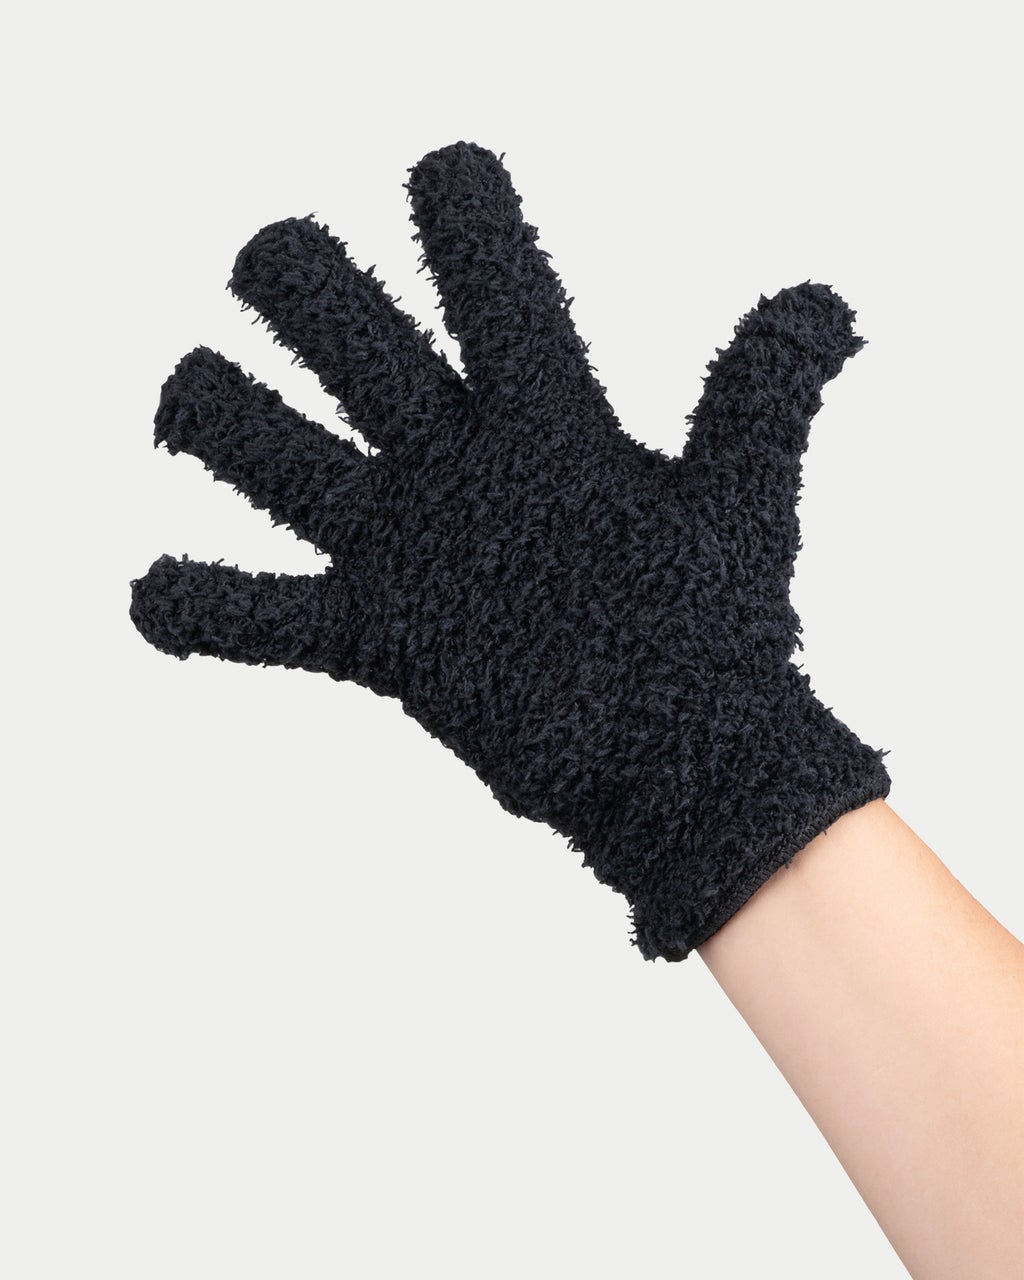 FRAMAR Bleach Blenders Gloves